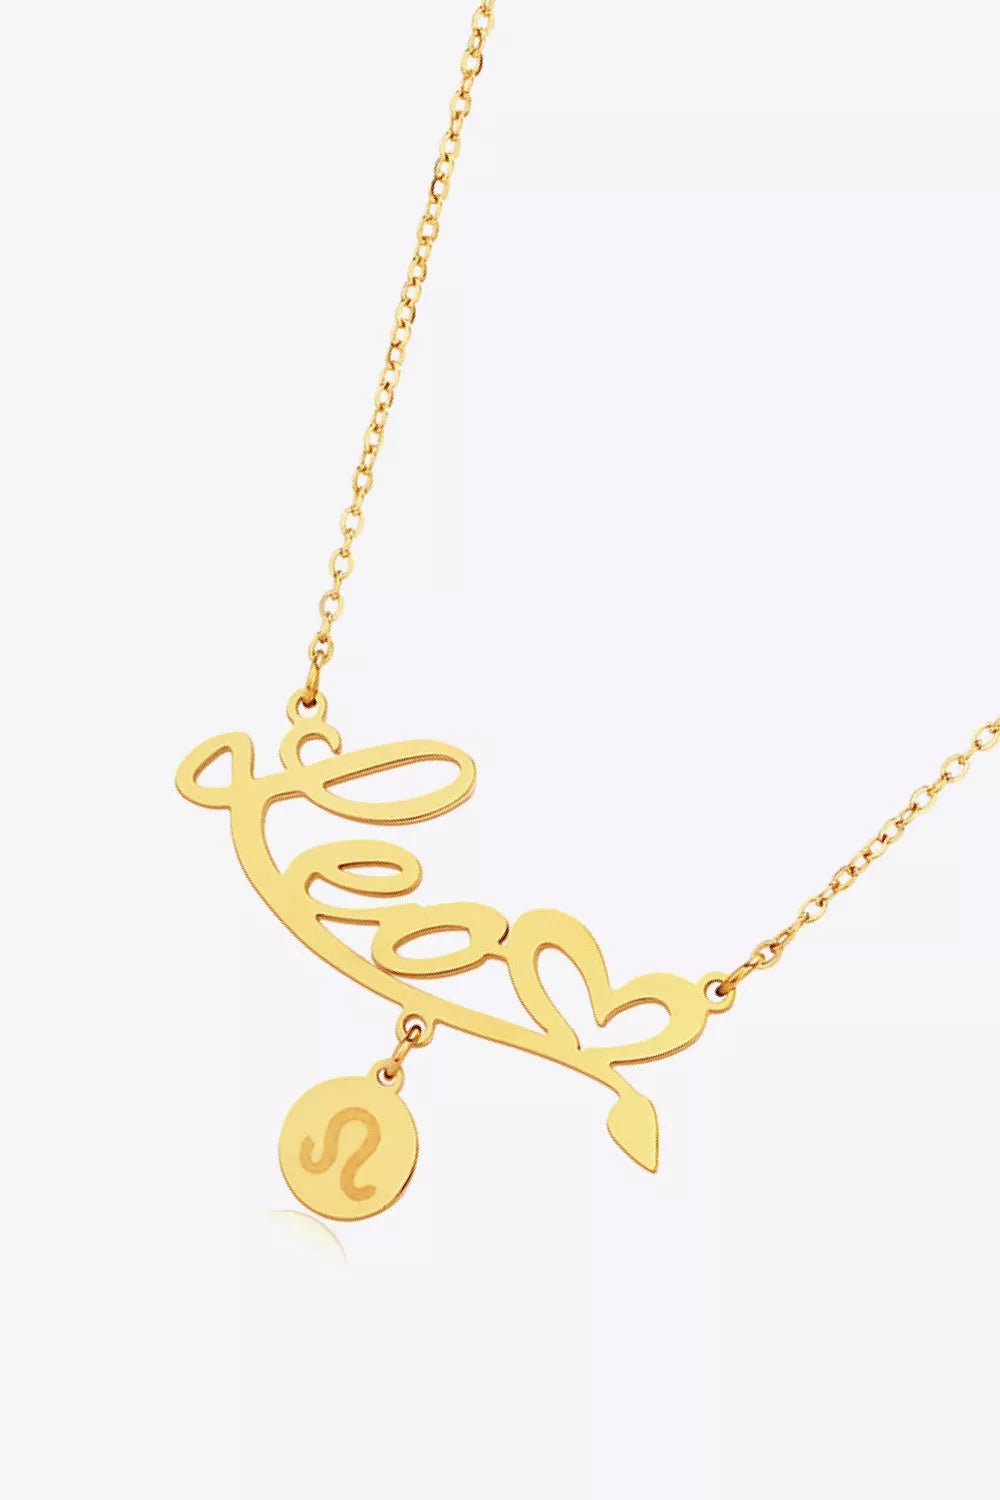 Zodiac Pendant Zircon Necklace - London's Closet Boutique